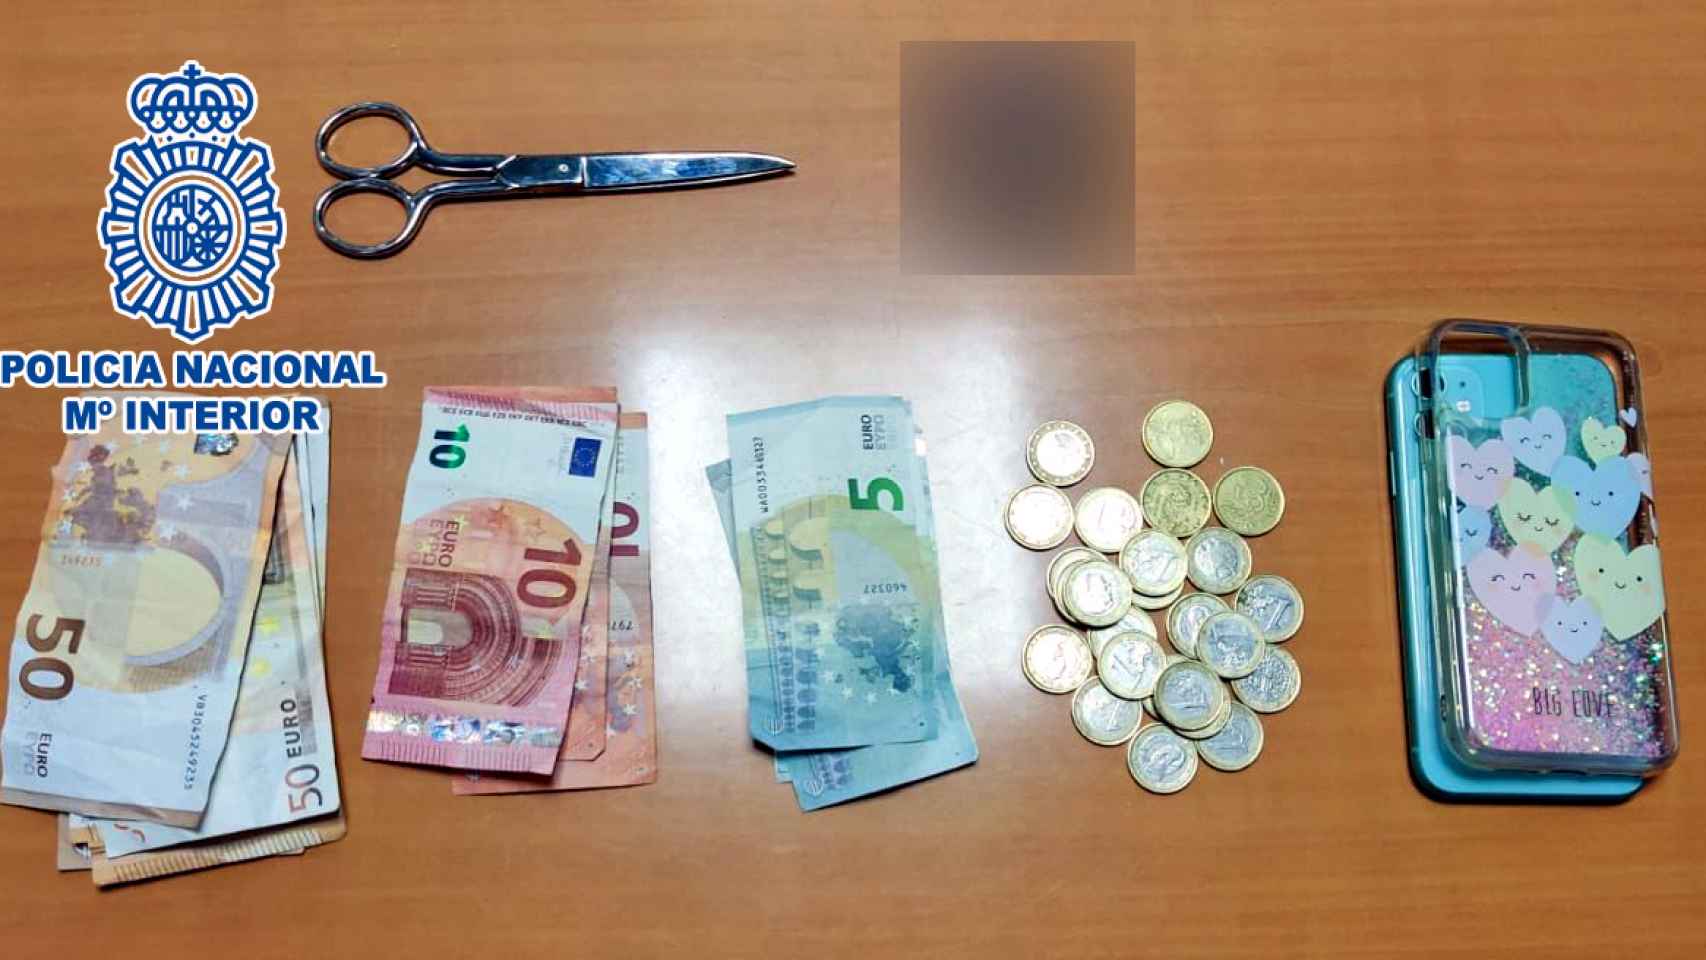 El presunto atracador se llevó el dinero de la caja, las tijeras y un teléfono móvil.